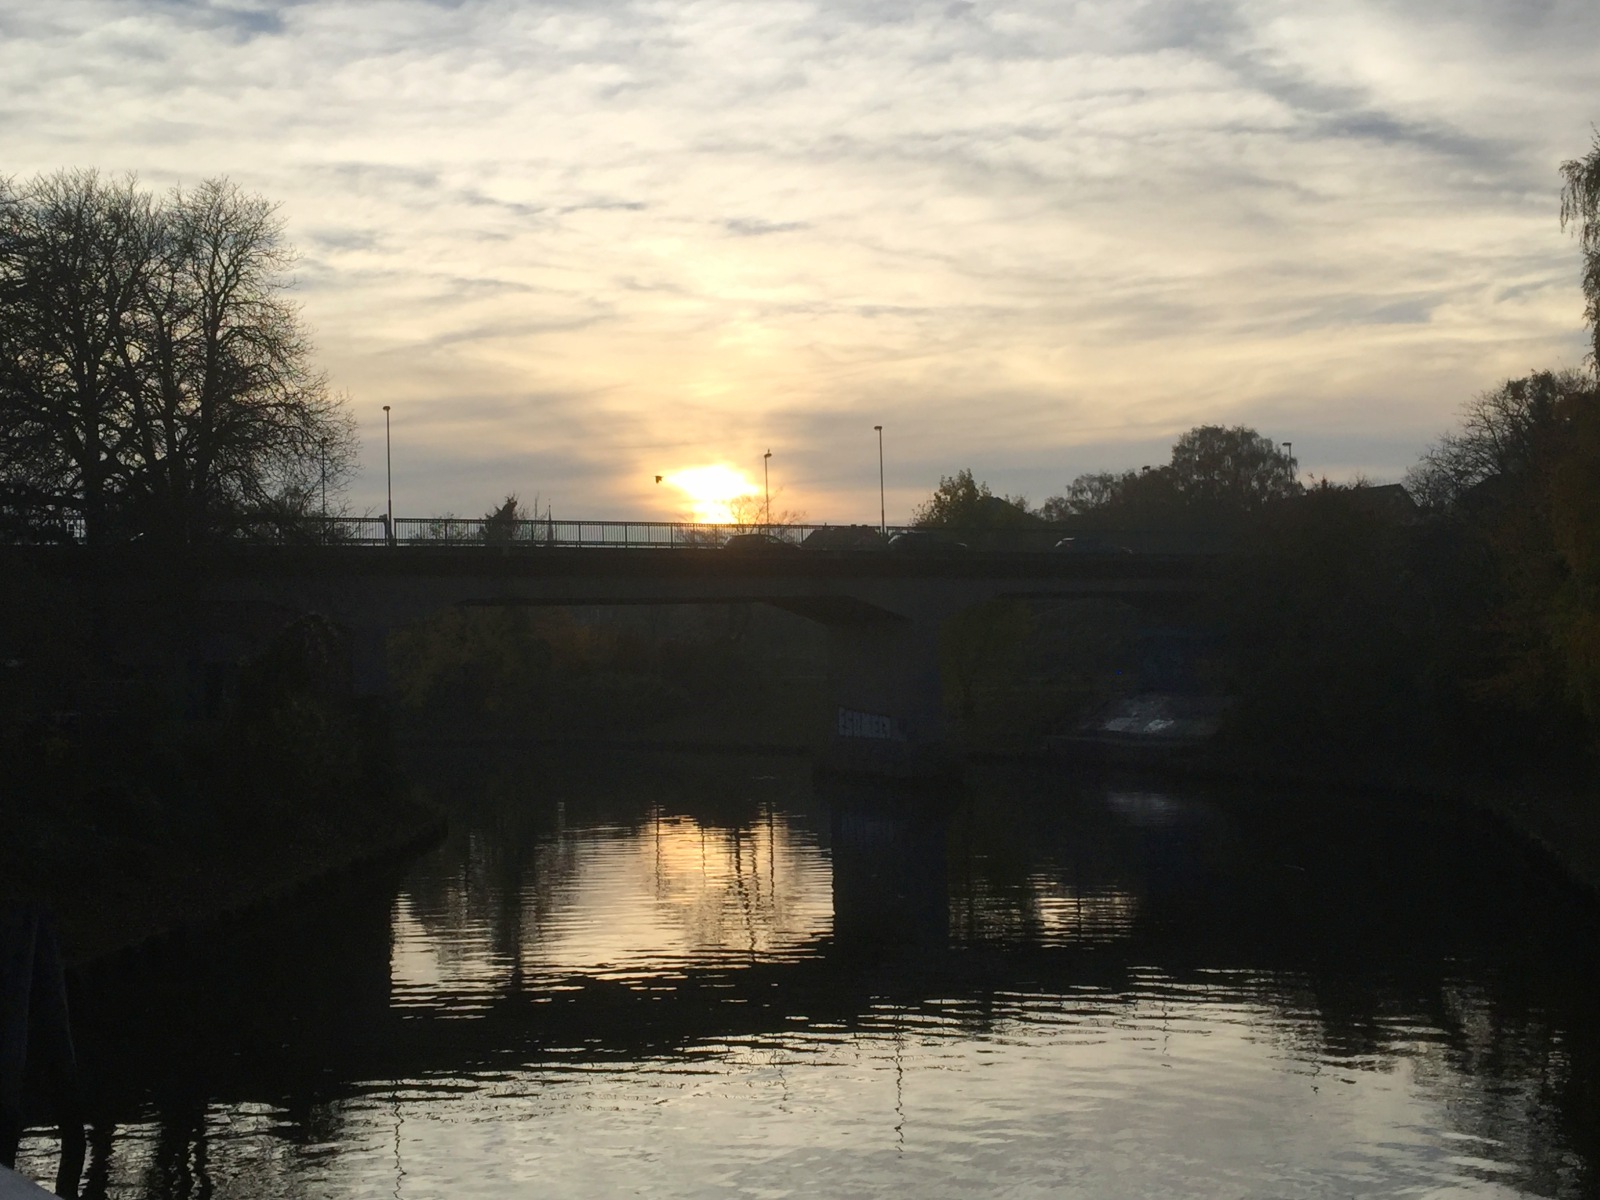 Brücke übers Wasser kurz vor dem Sonnenuntergang